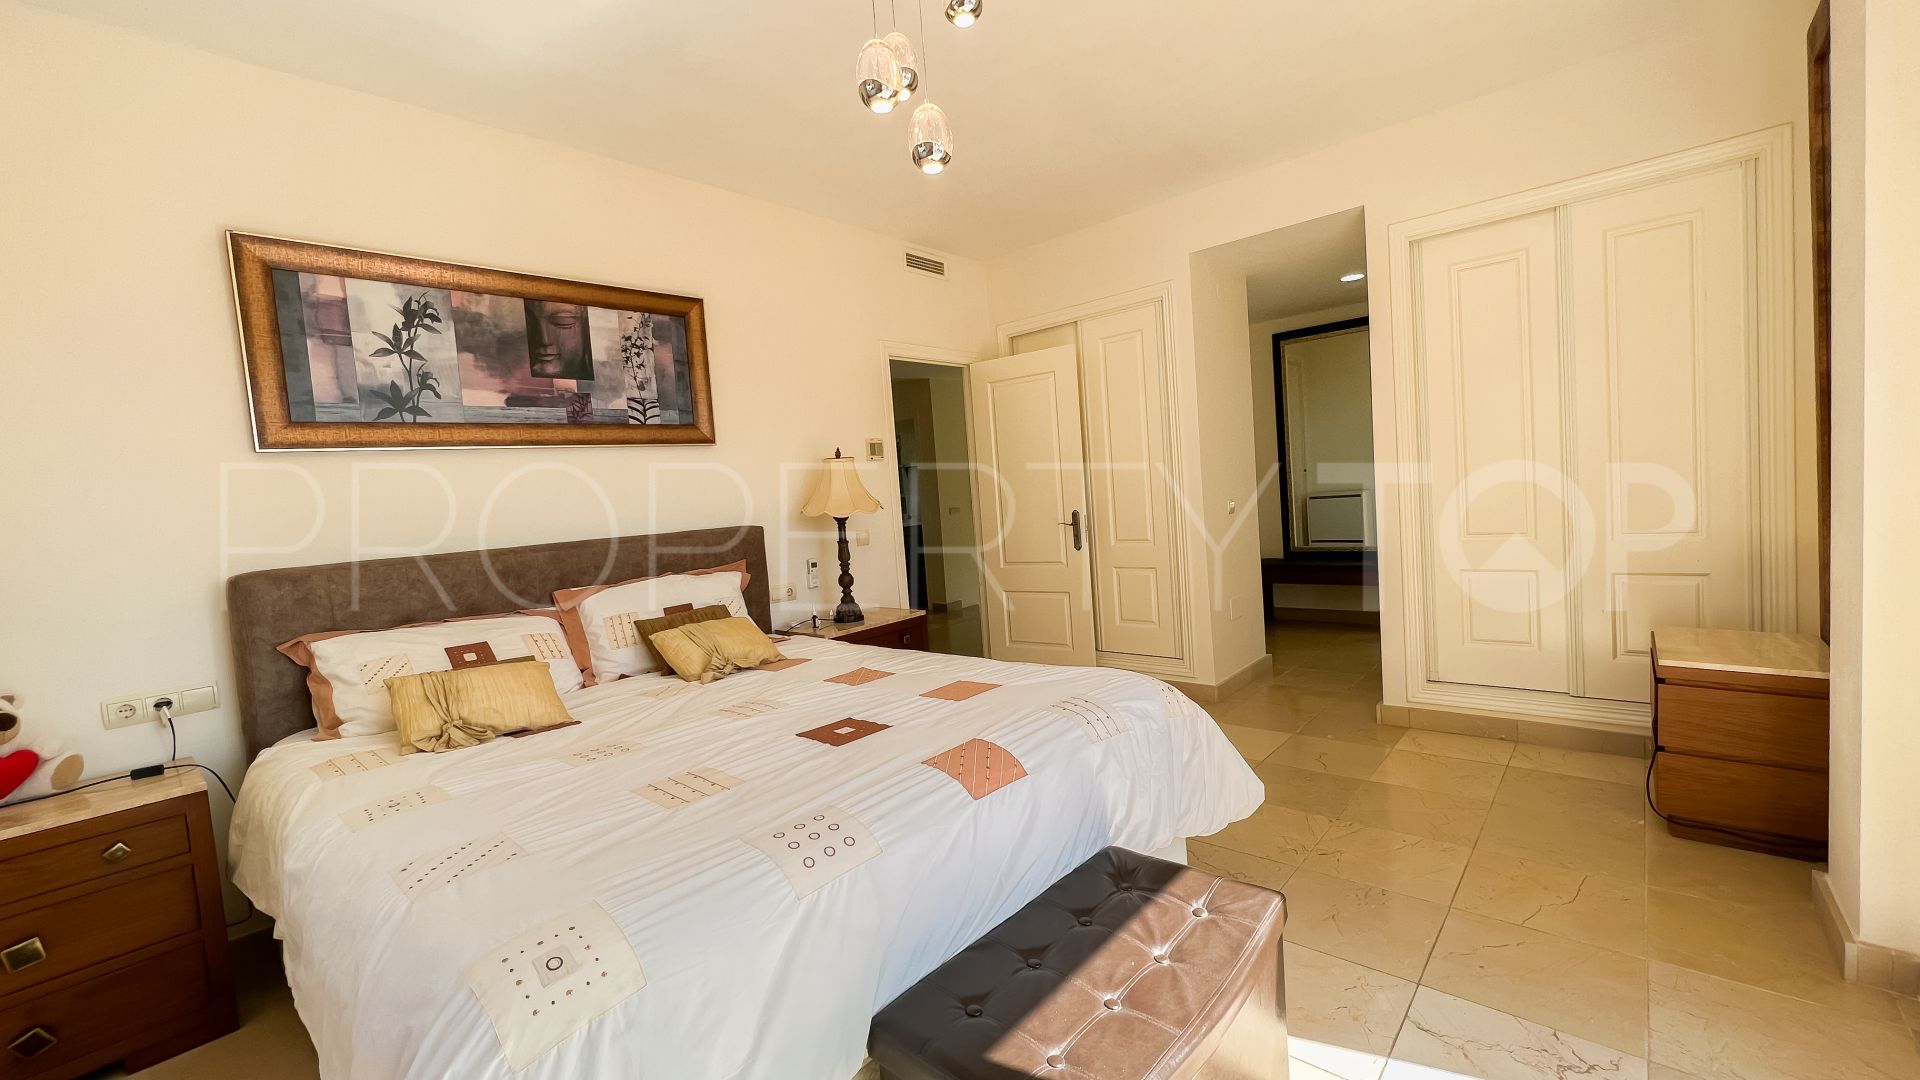 4 bedrooms Riviera del Sol villa for sale